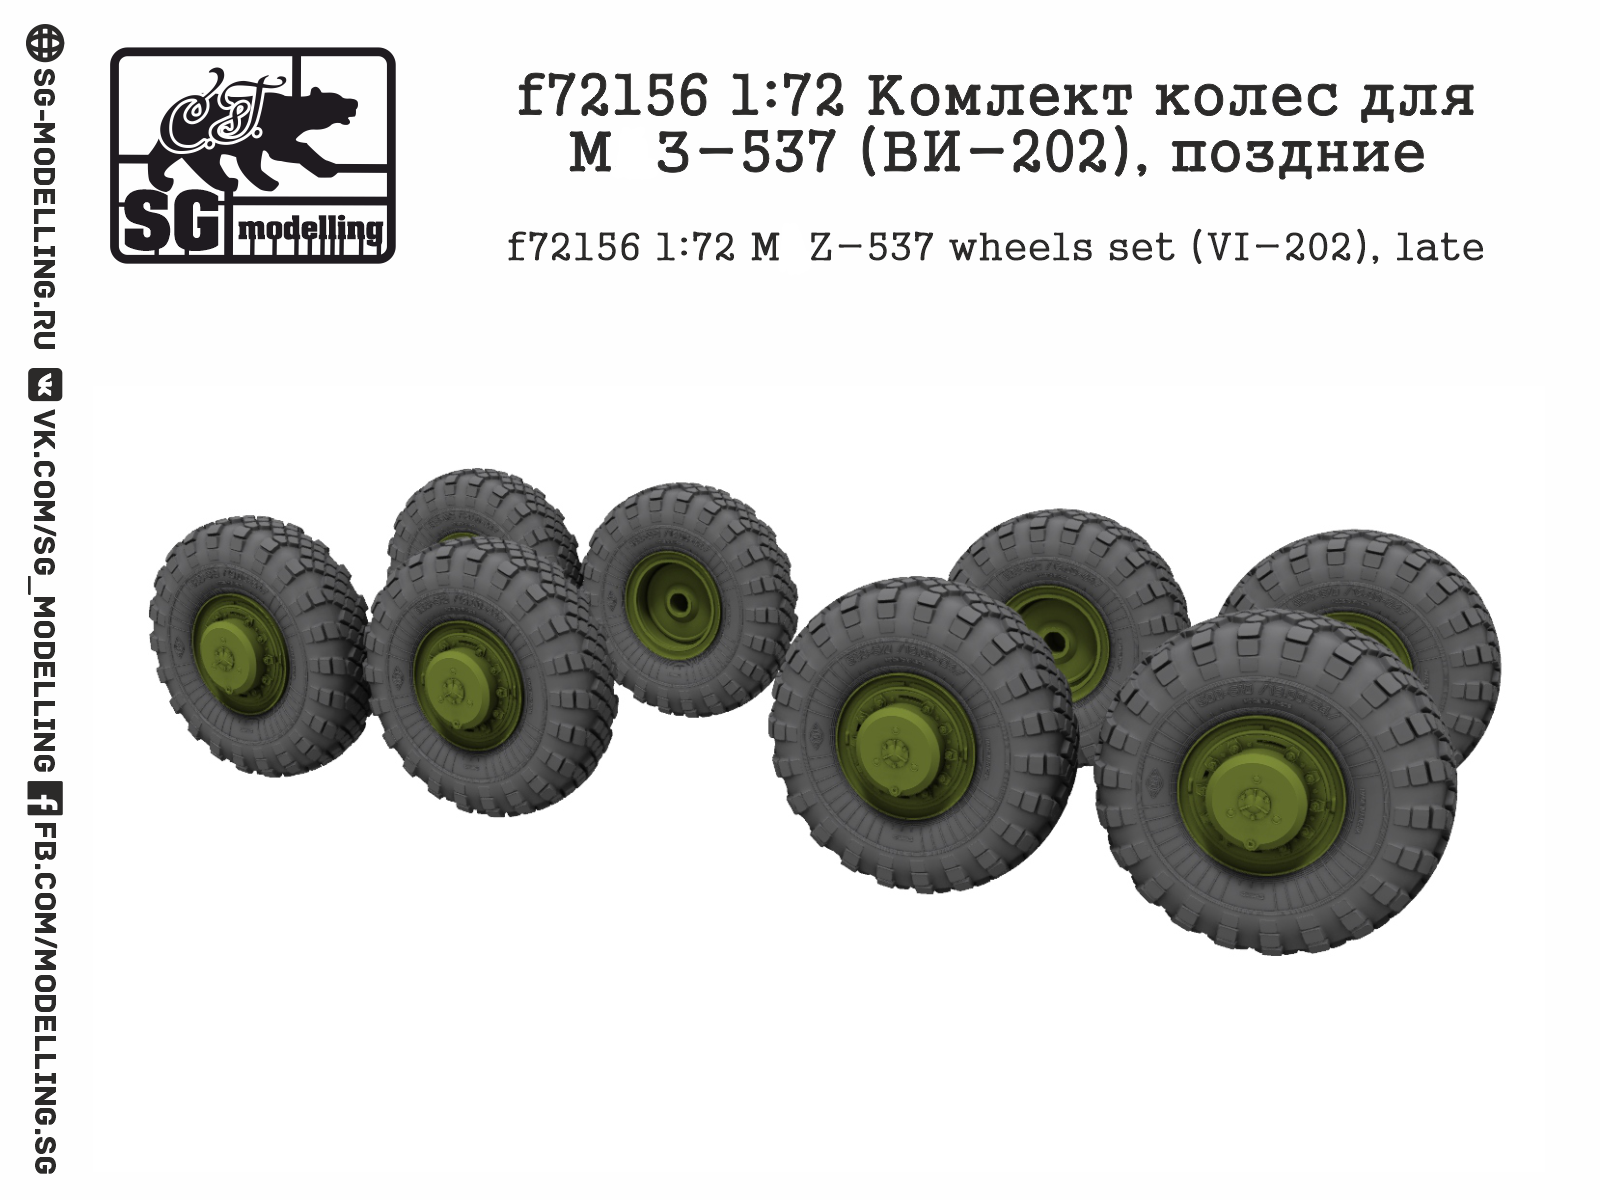 f72156  дополнения из смолы  Комлект колес для М@З-537 (ВИ-202), поздние  (1:72)